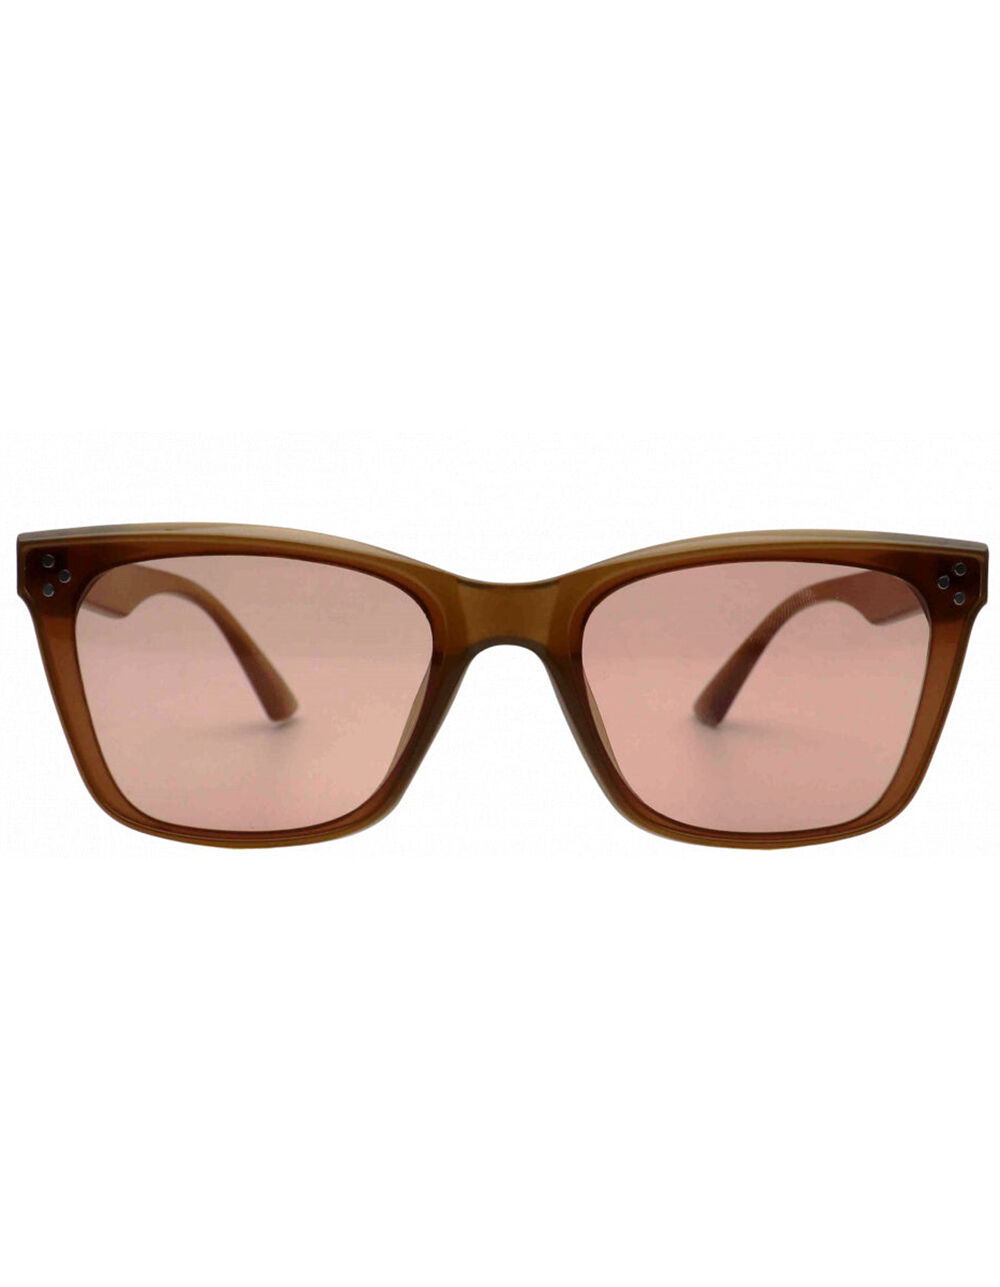  I-SEA Women's Sunglasses - Ziggy (BLACK/SMOKE